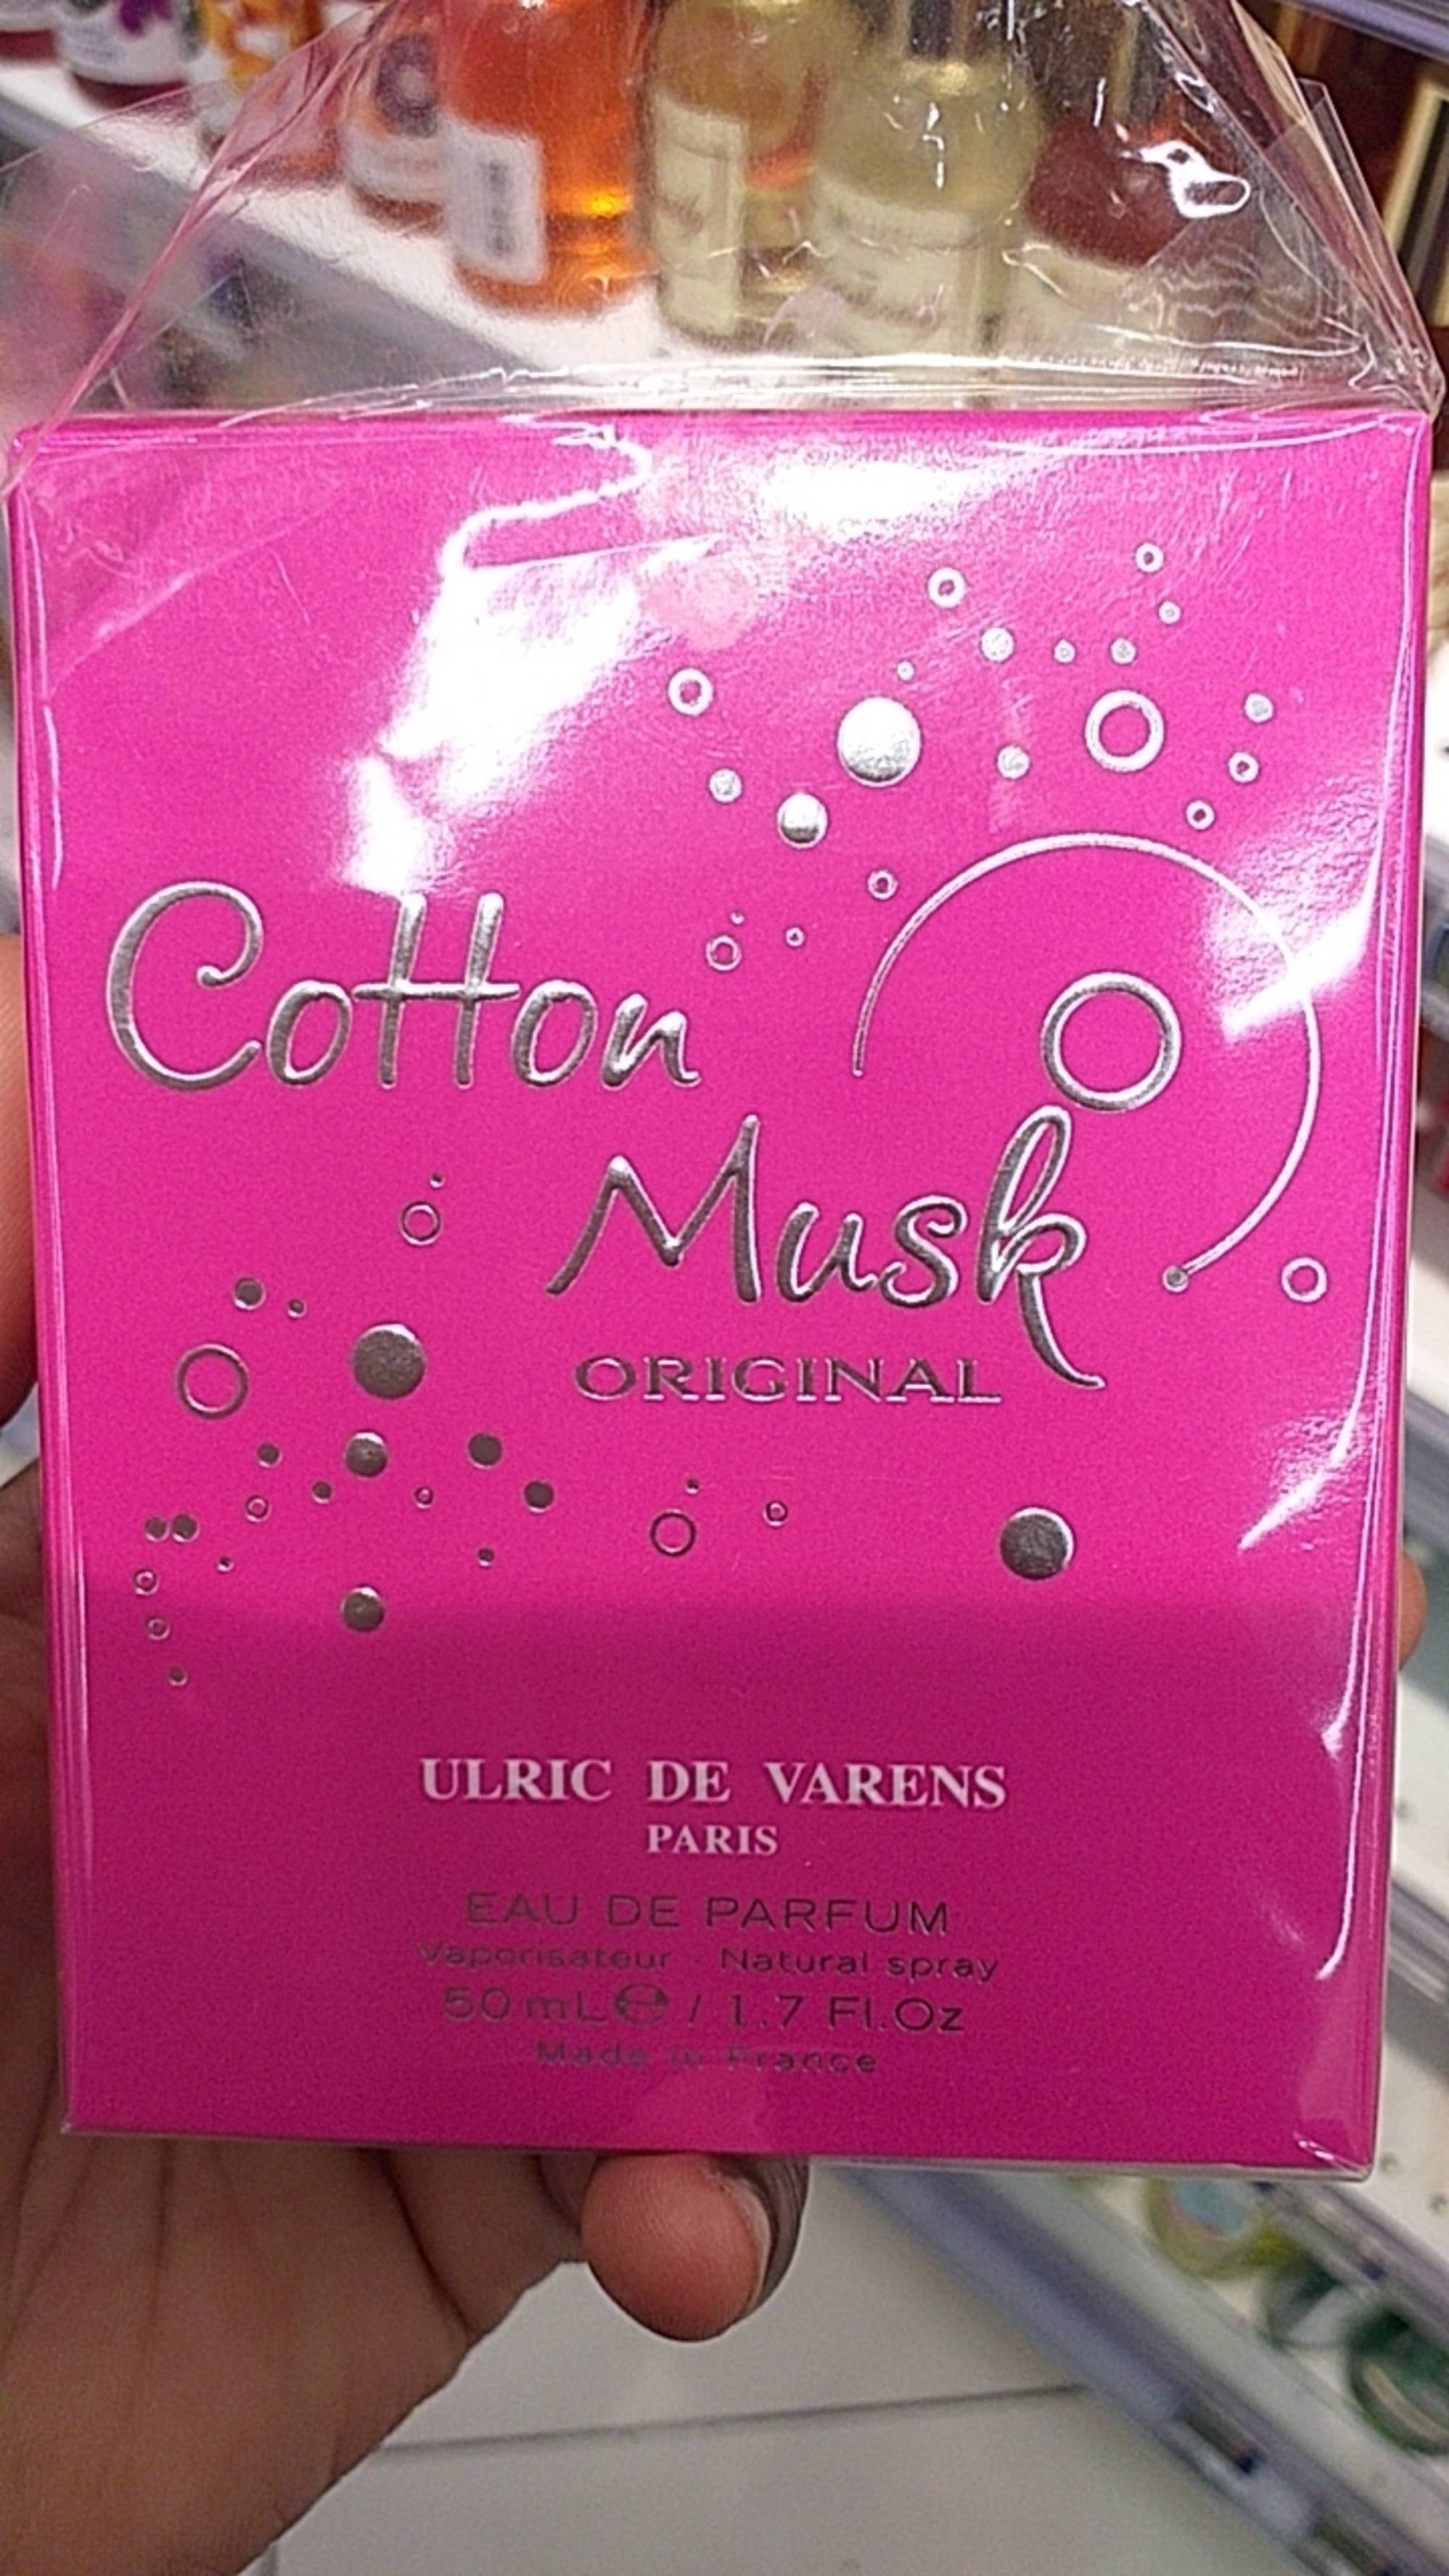 ULRIC DE VARENS - Cotton mask original - Eau de parfum